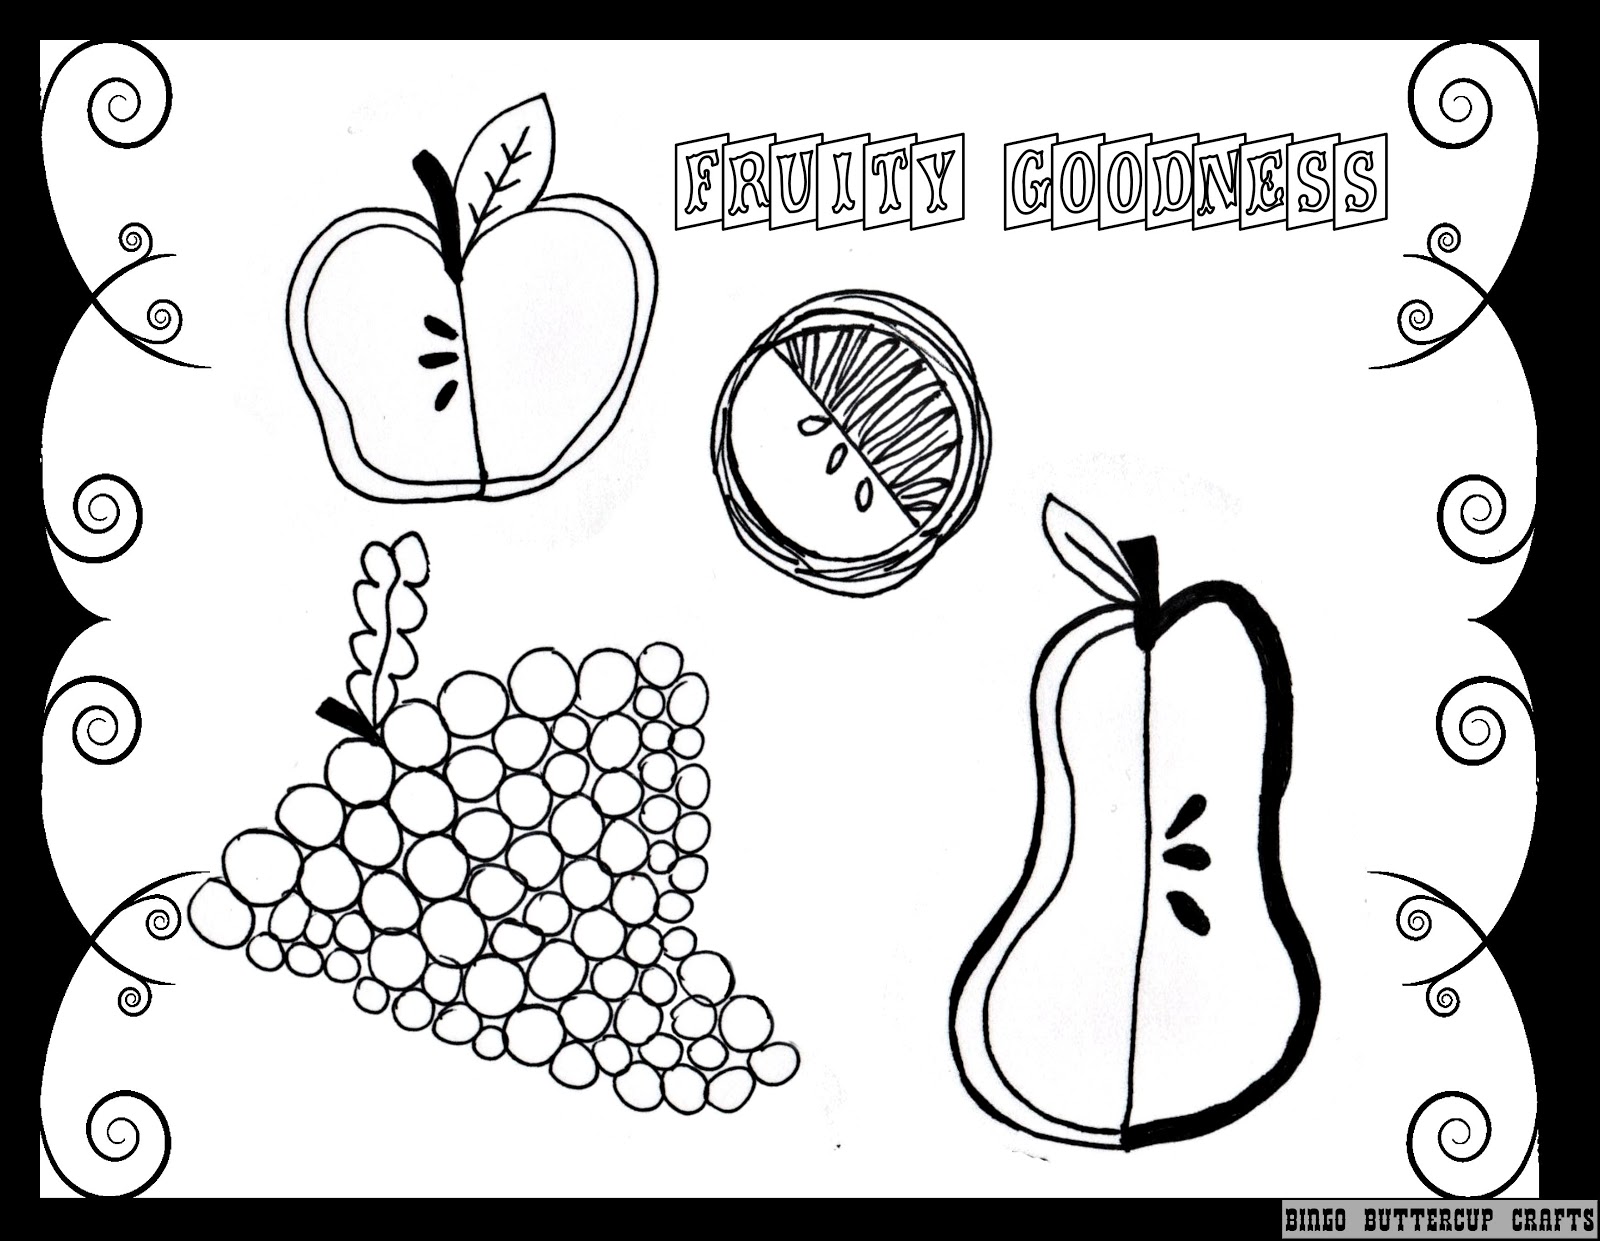 Download Bingo Buttercup Designs: Color Me Crafty: Cute Food!